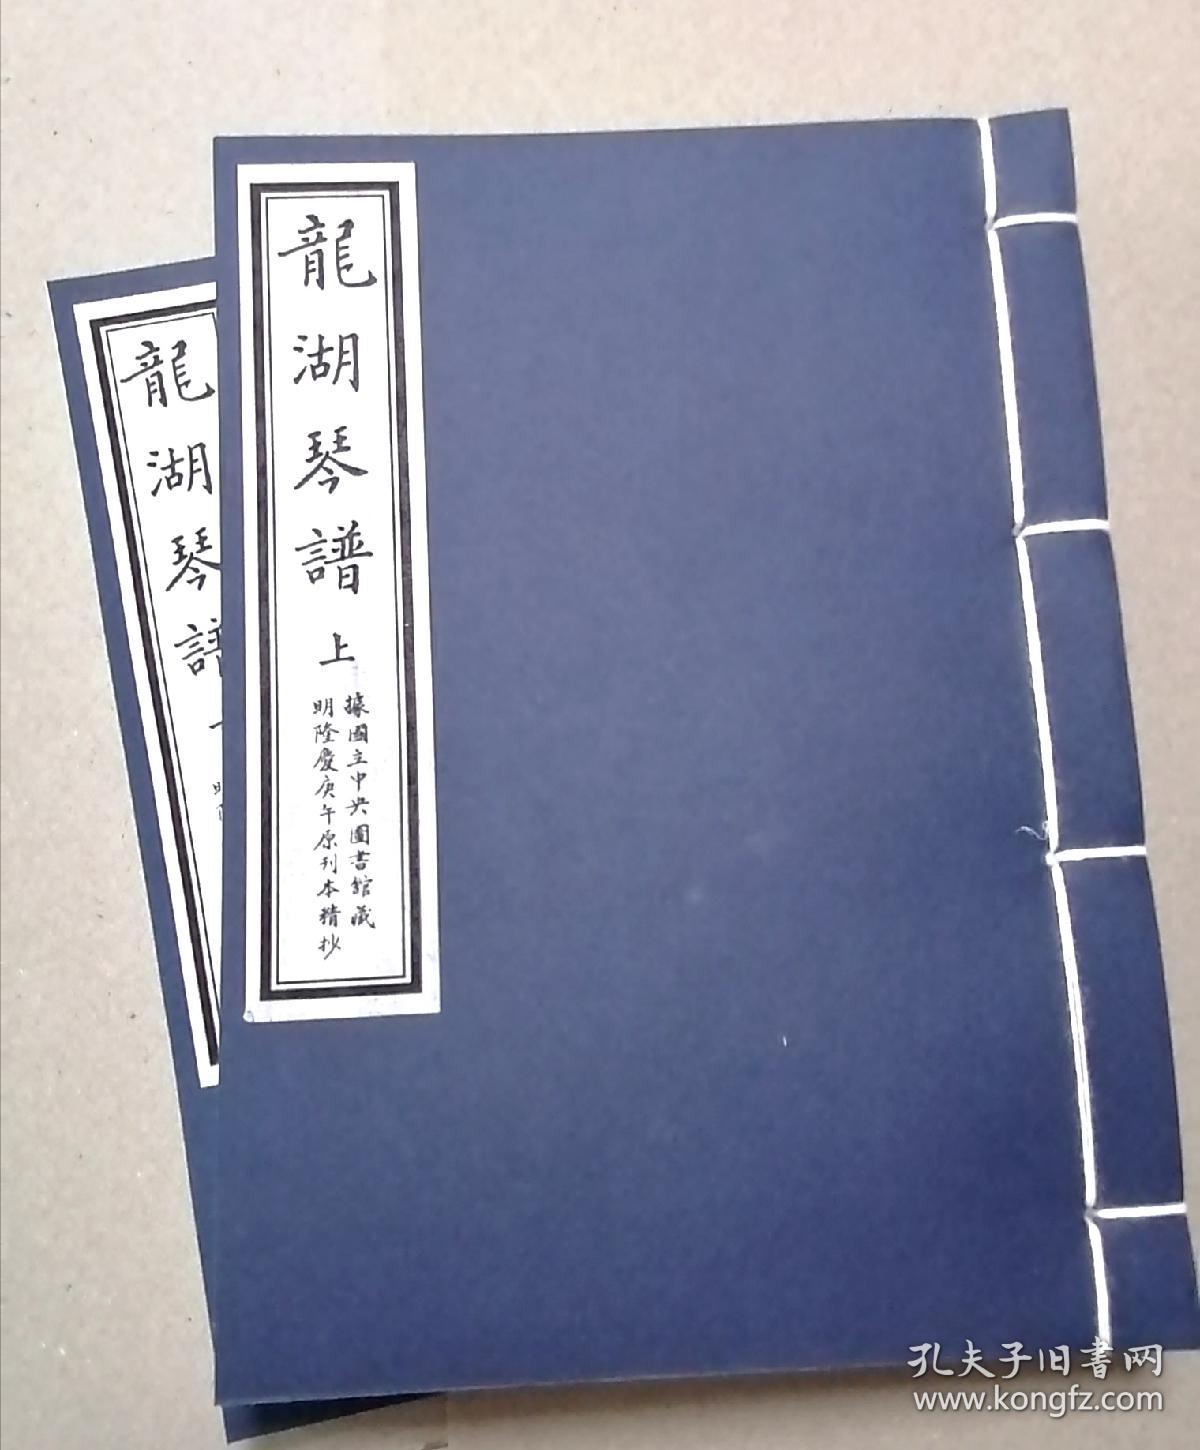 【古琴】《龙湖琴谱》影印台湾早期抄本，宣纸线装筒子页两册，合计258面。S#1021#